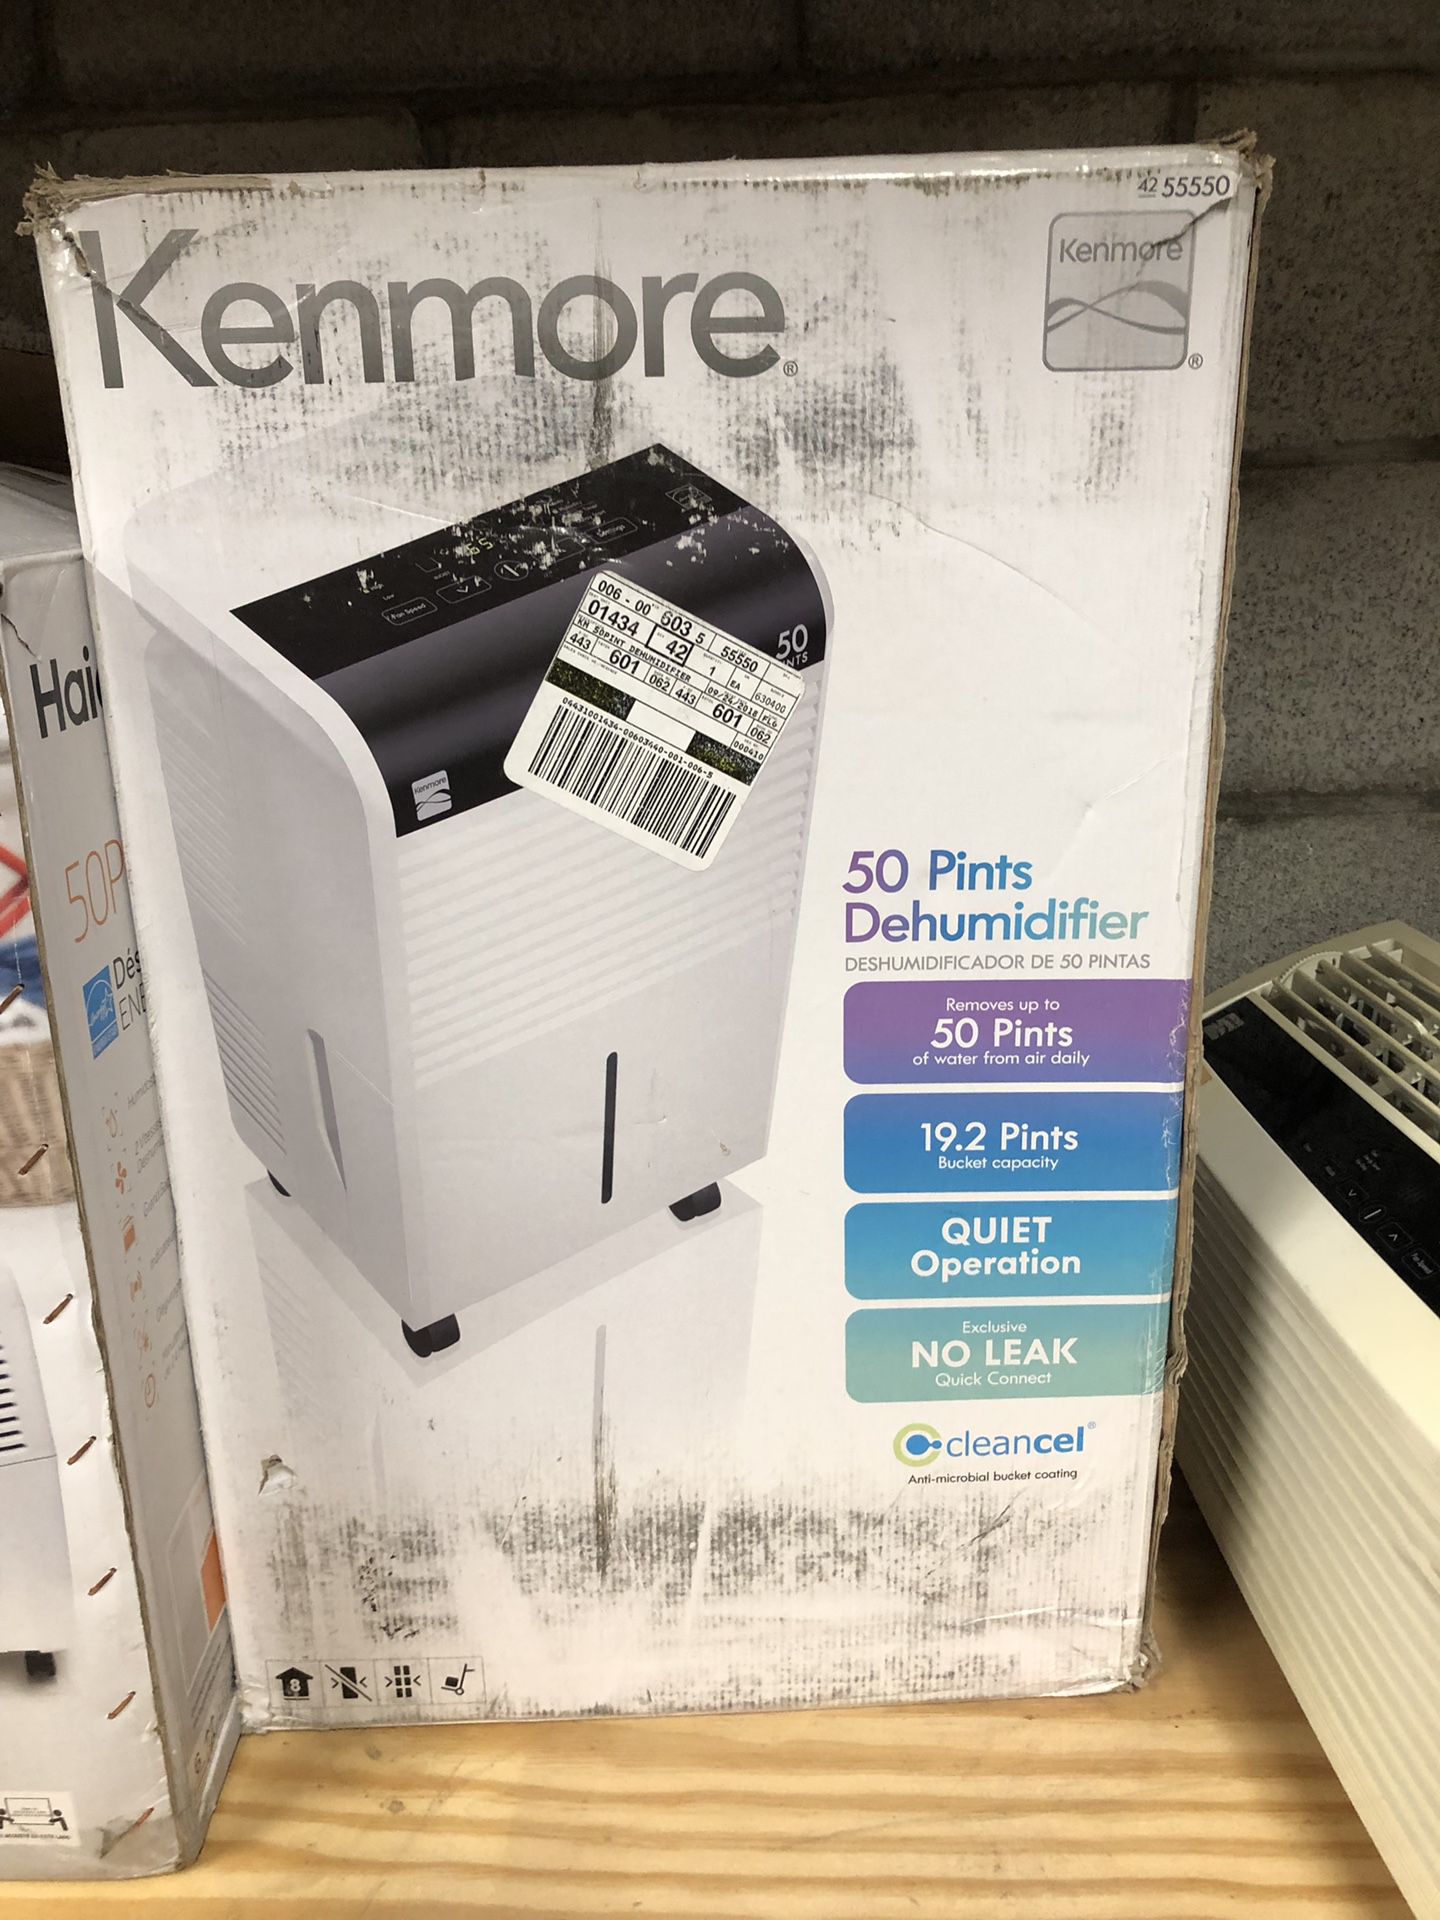 Kenmore KM50 50pint Dehumidifier #55550